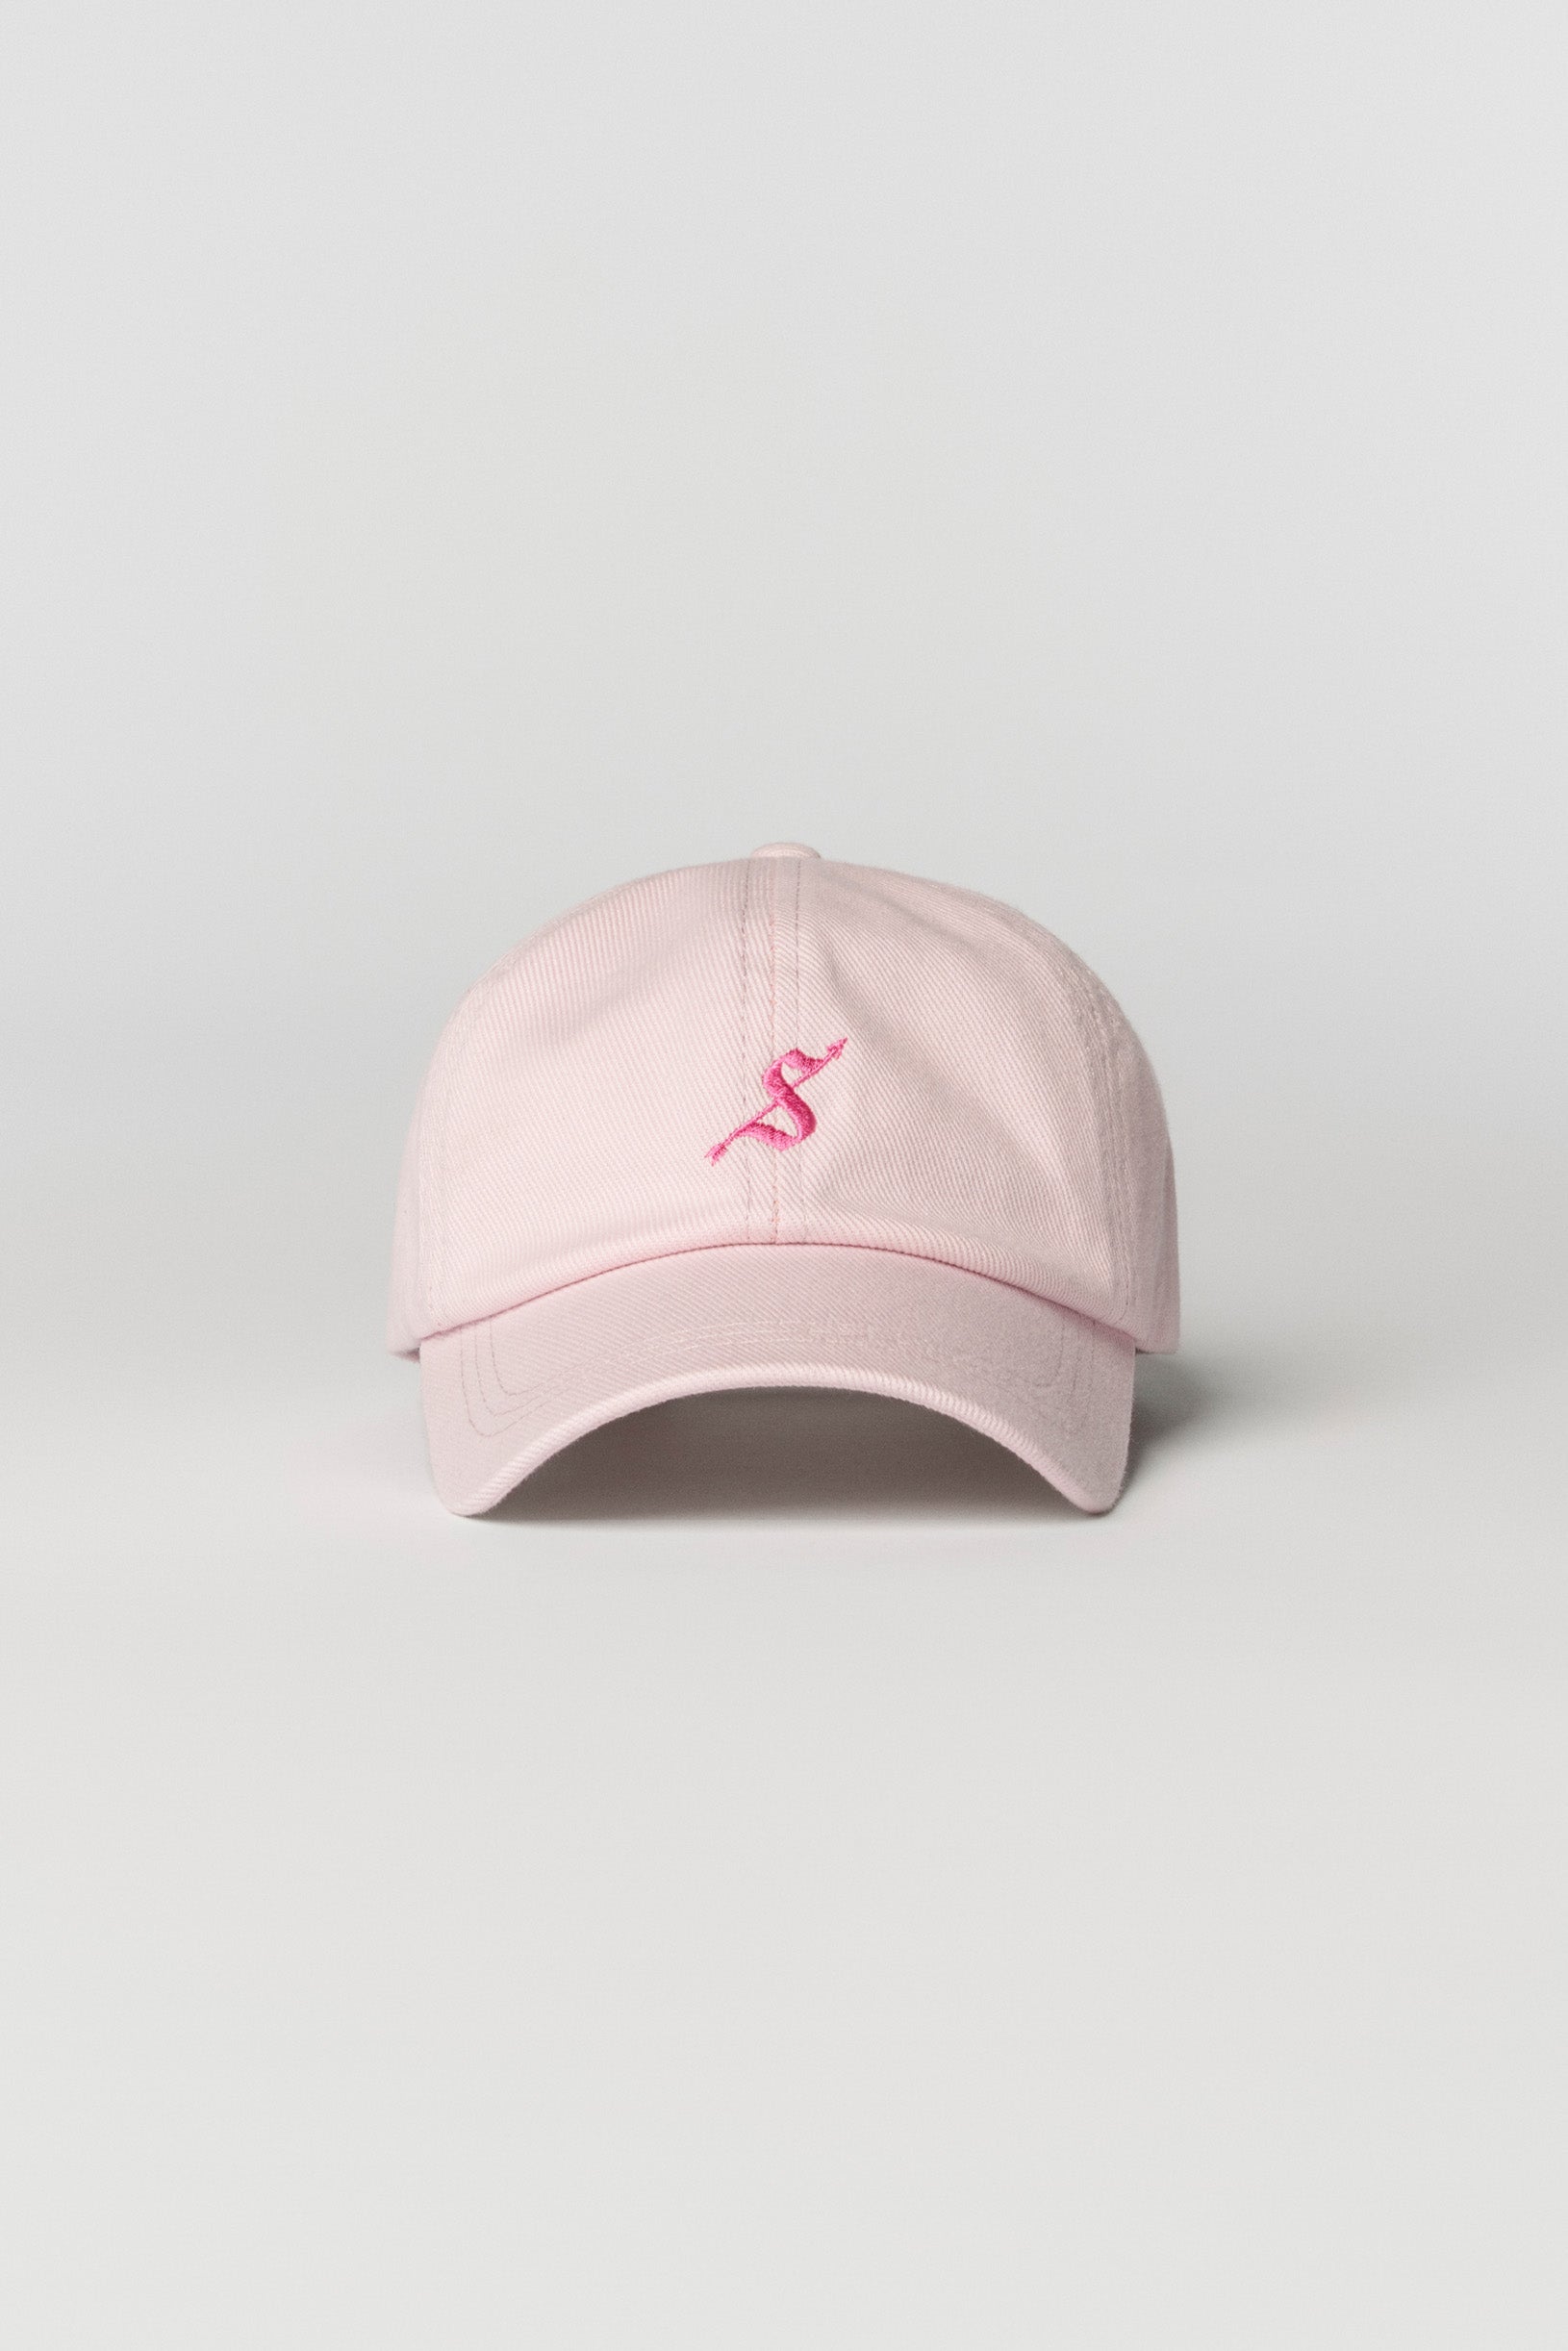 Arrow logo 6-panel cap pink